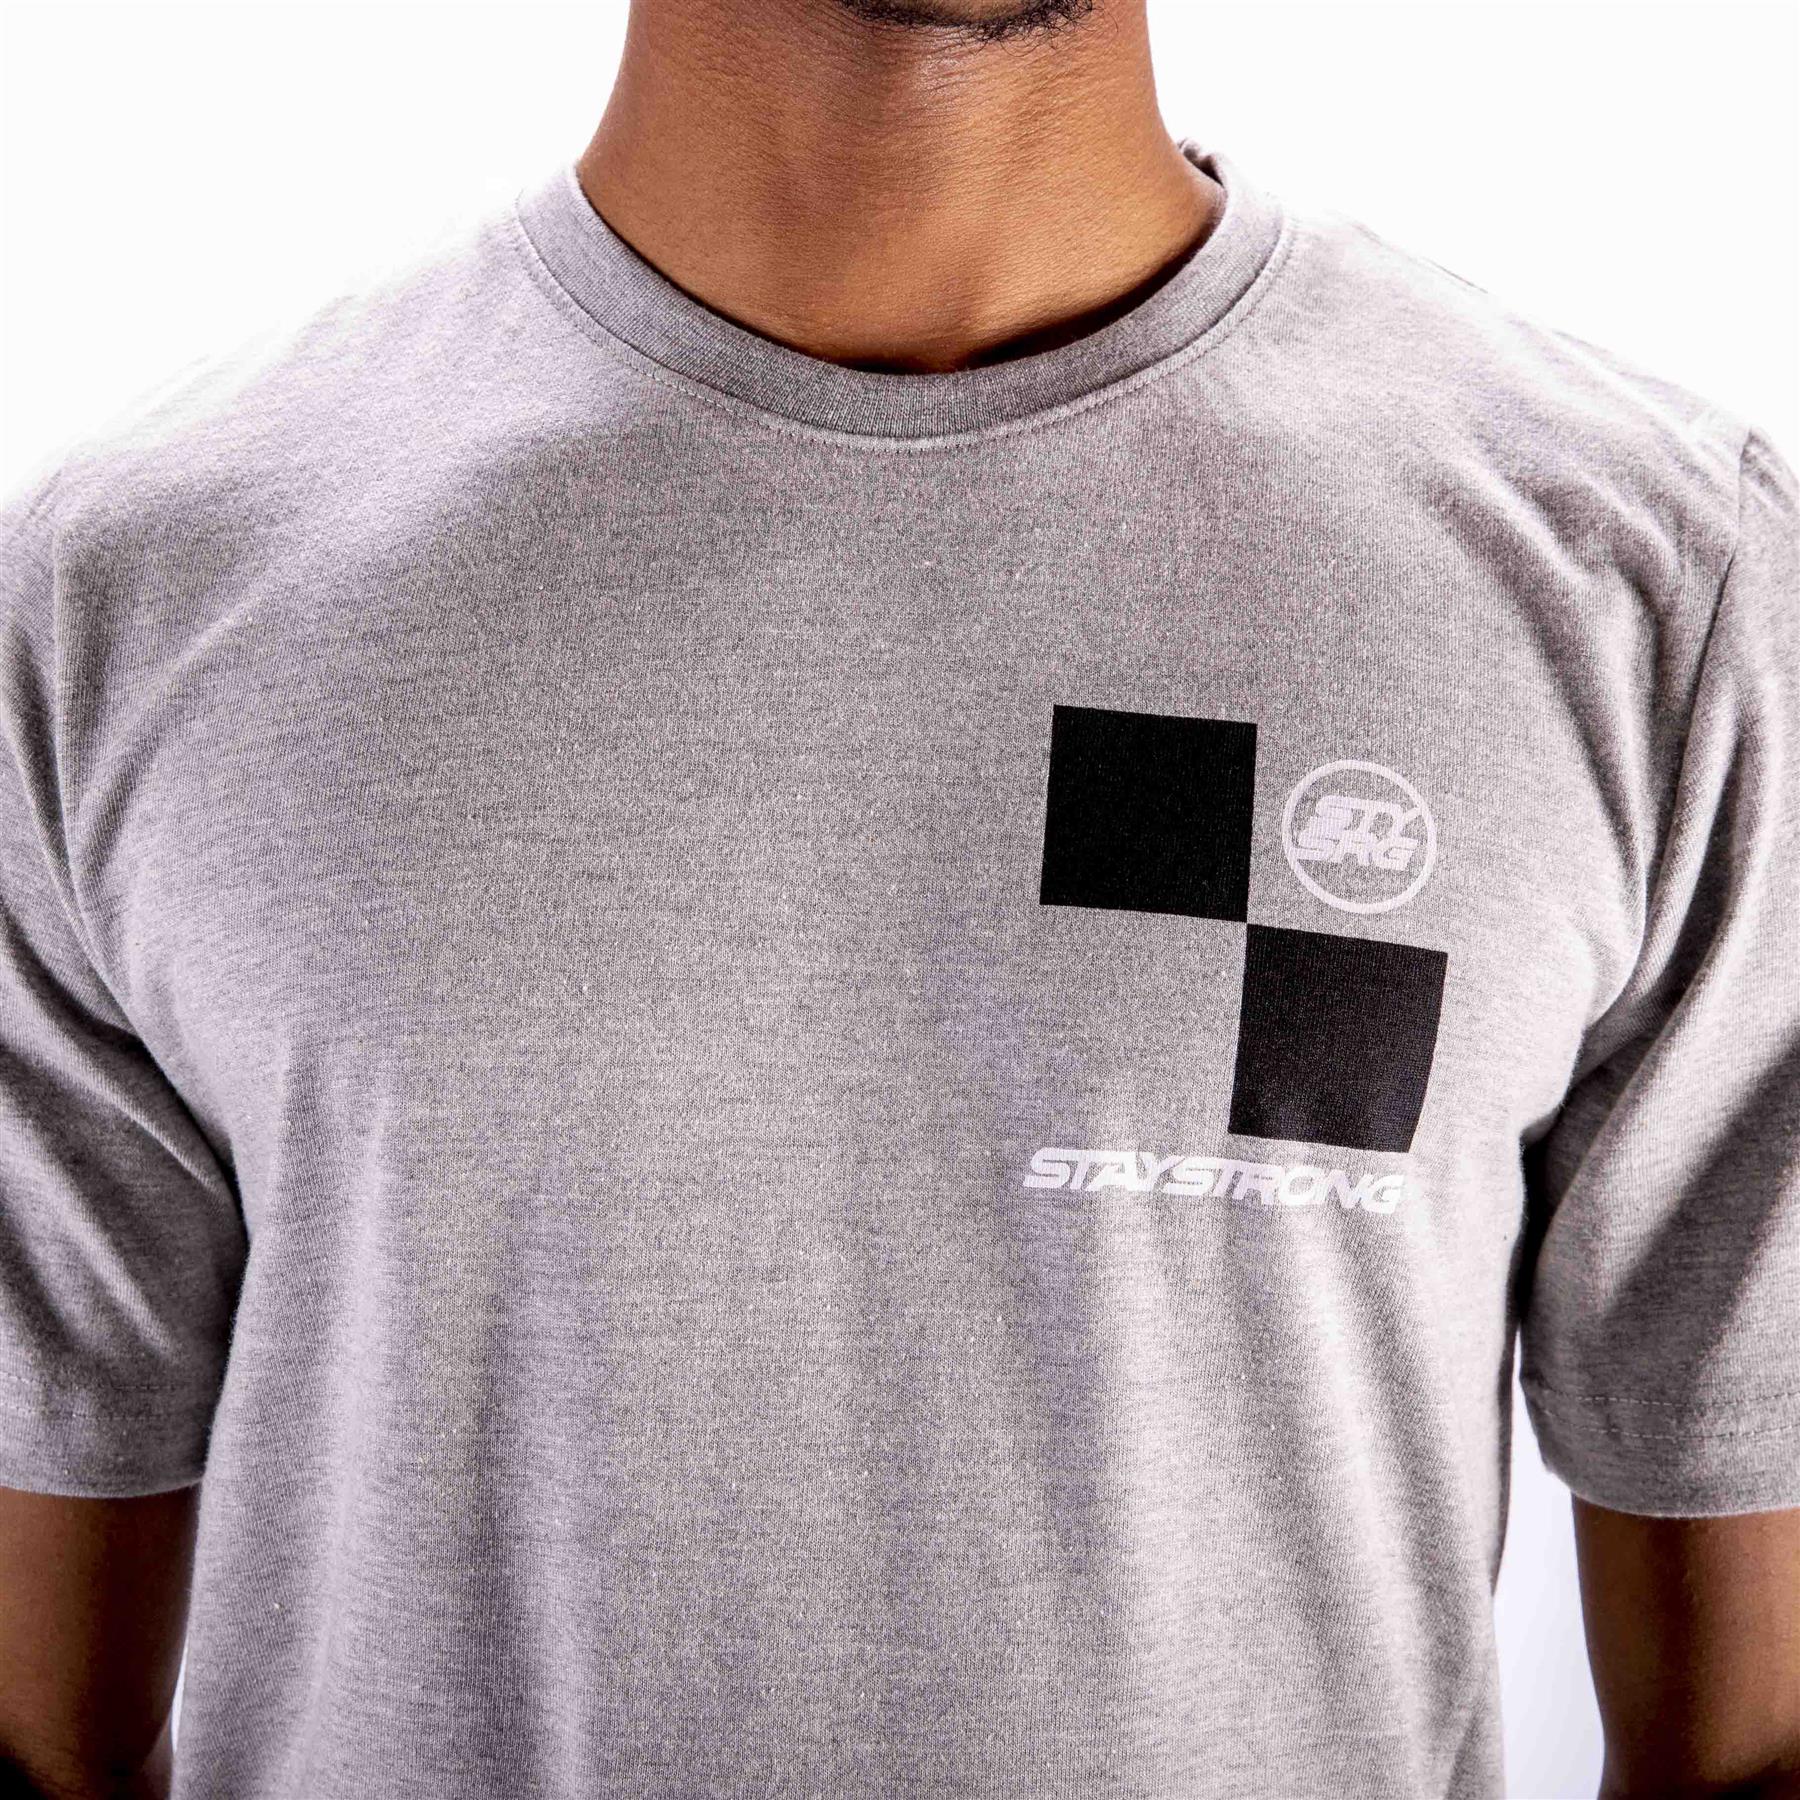 Stay Strong Camiseta de checker - gris